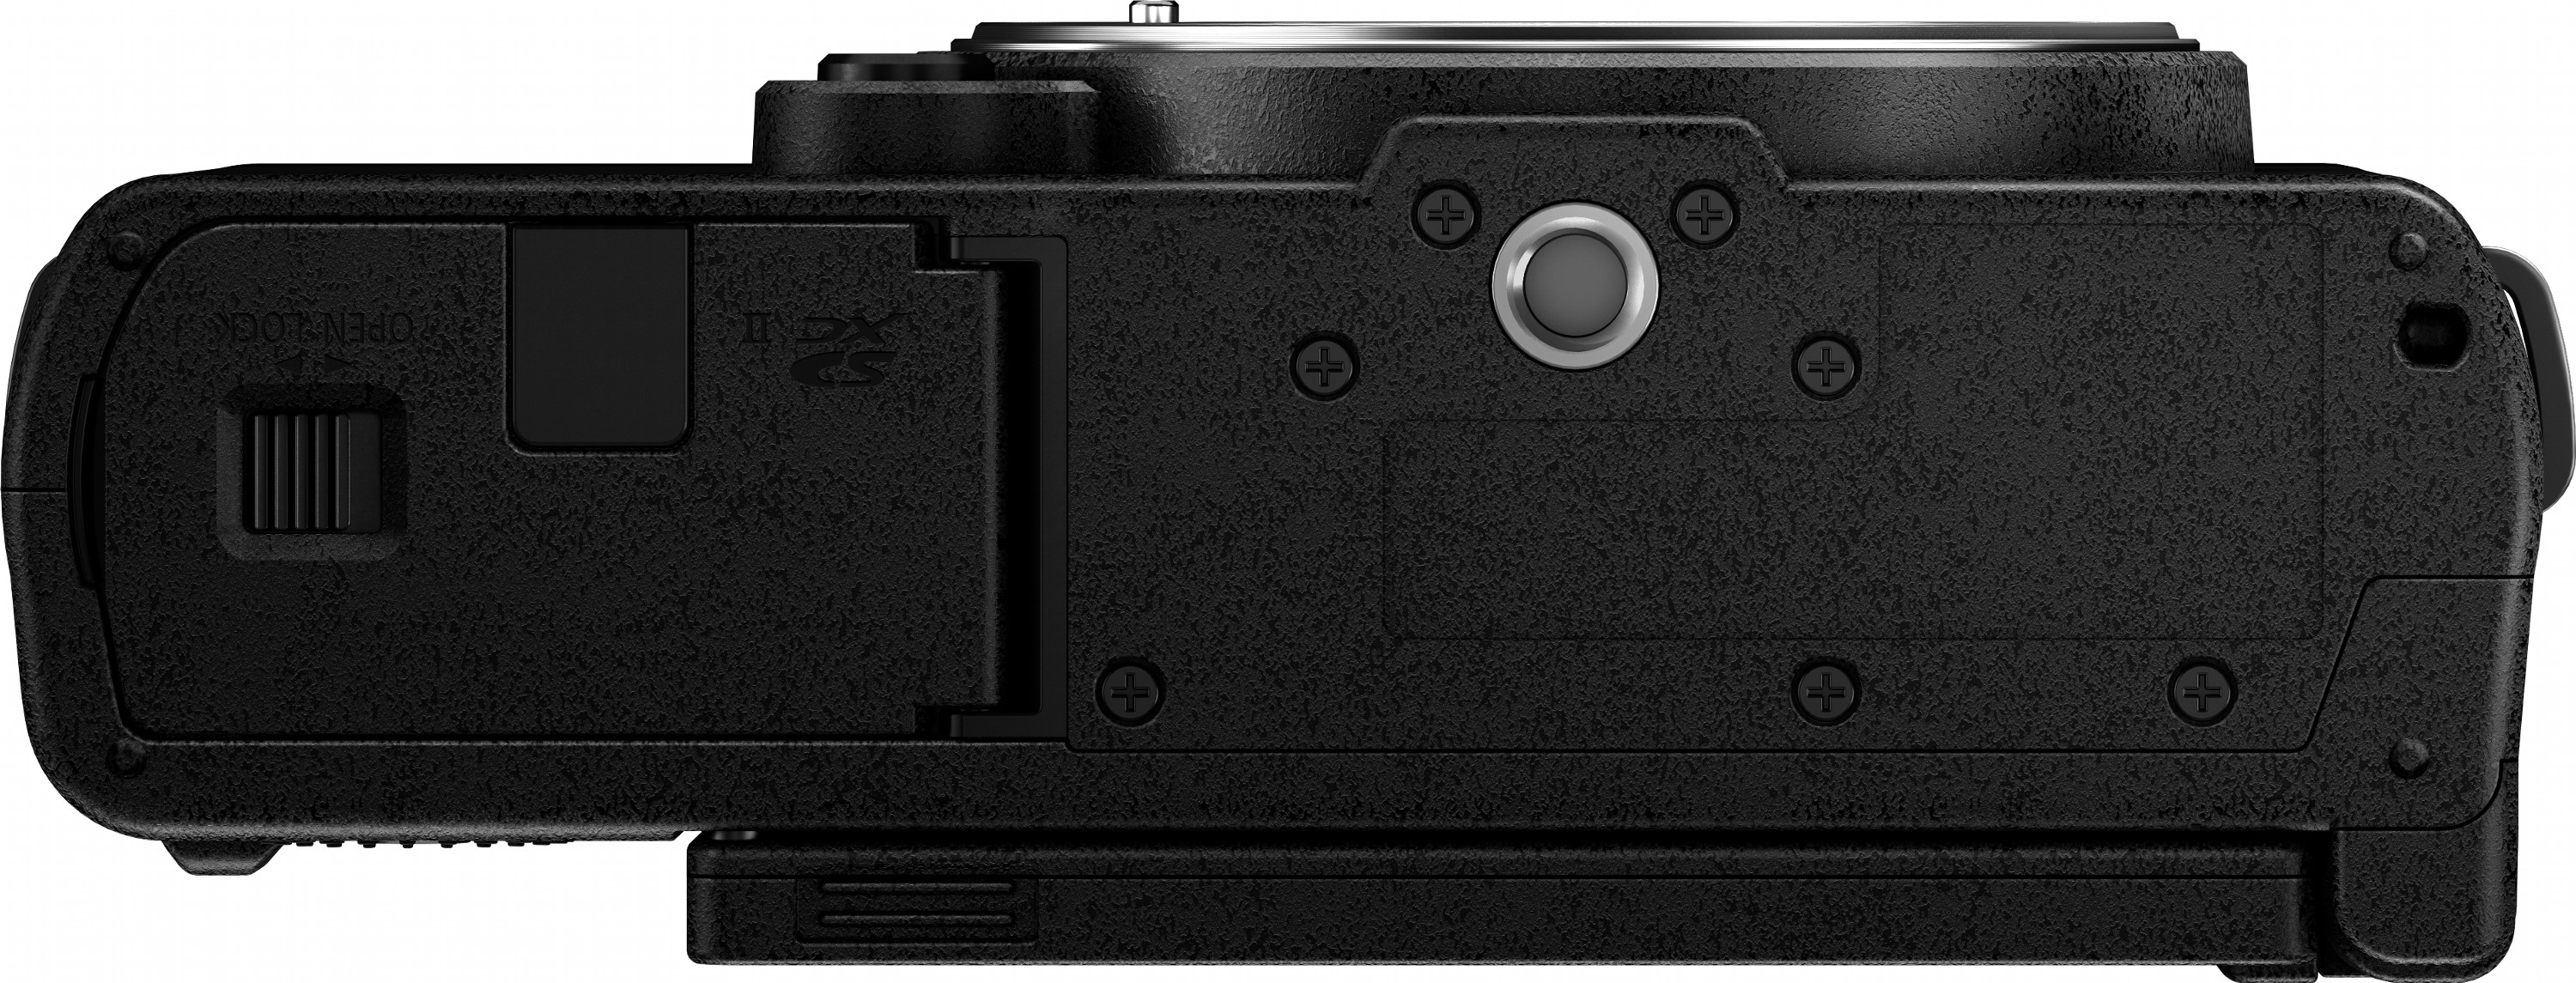 Фотоапарат Panasonic Lumix DC-S9 + 20-60mm f/3.5-5.6 Jet Black (DC-S9KE-K)фото11